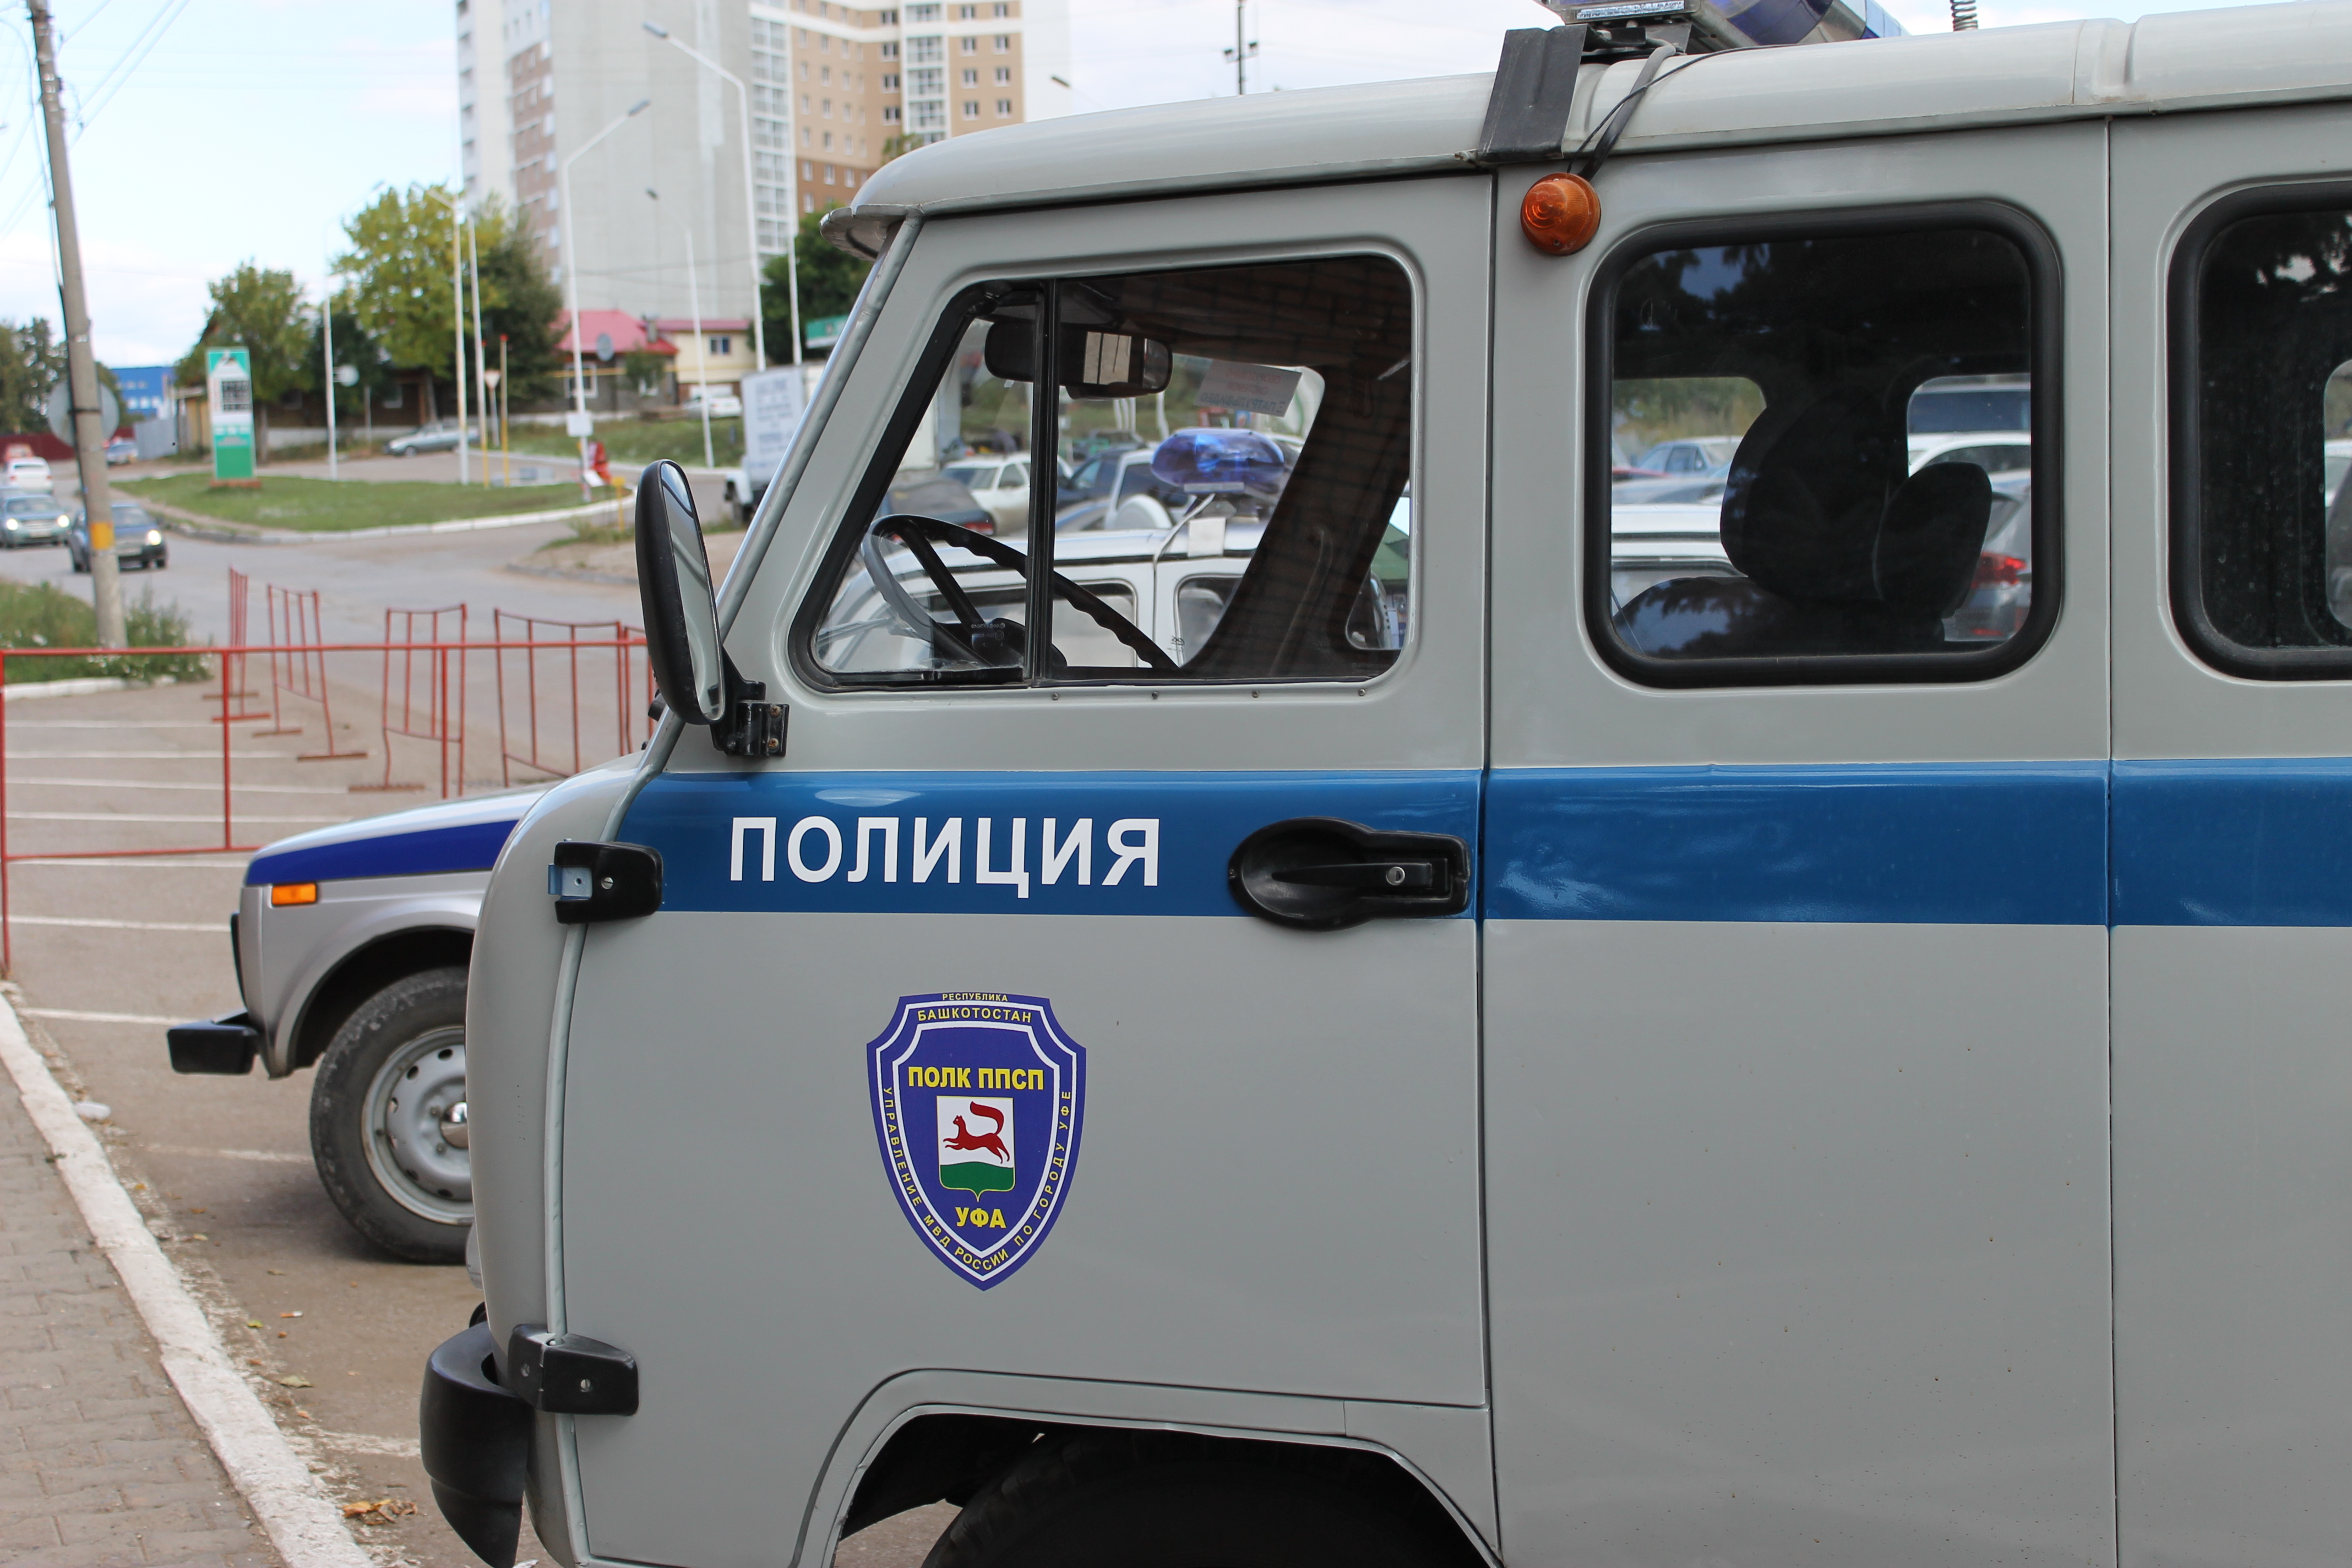 В Башкирии двое парней ограбили монастырь и вынесли из сейфа предприятия 400 тысяч рублей, чтобы уехать в Уфу